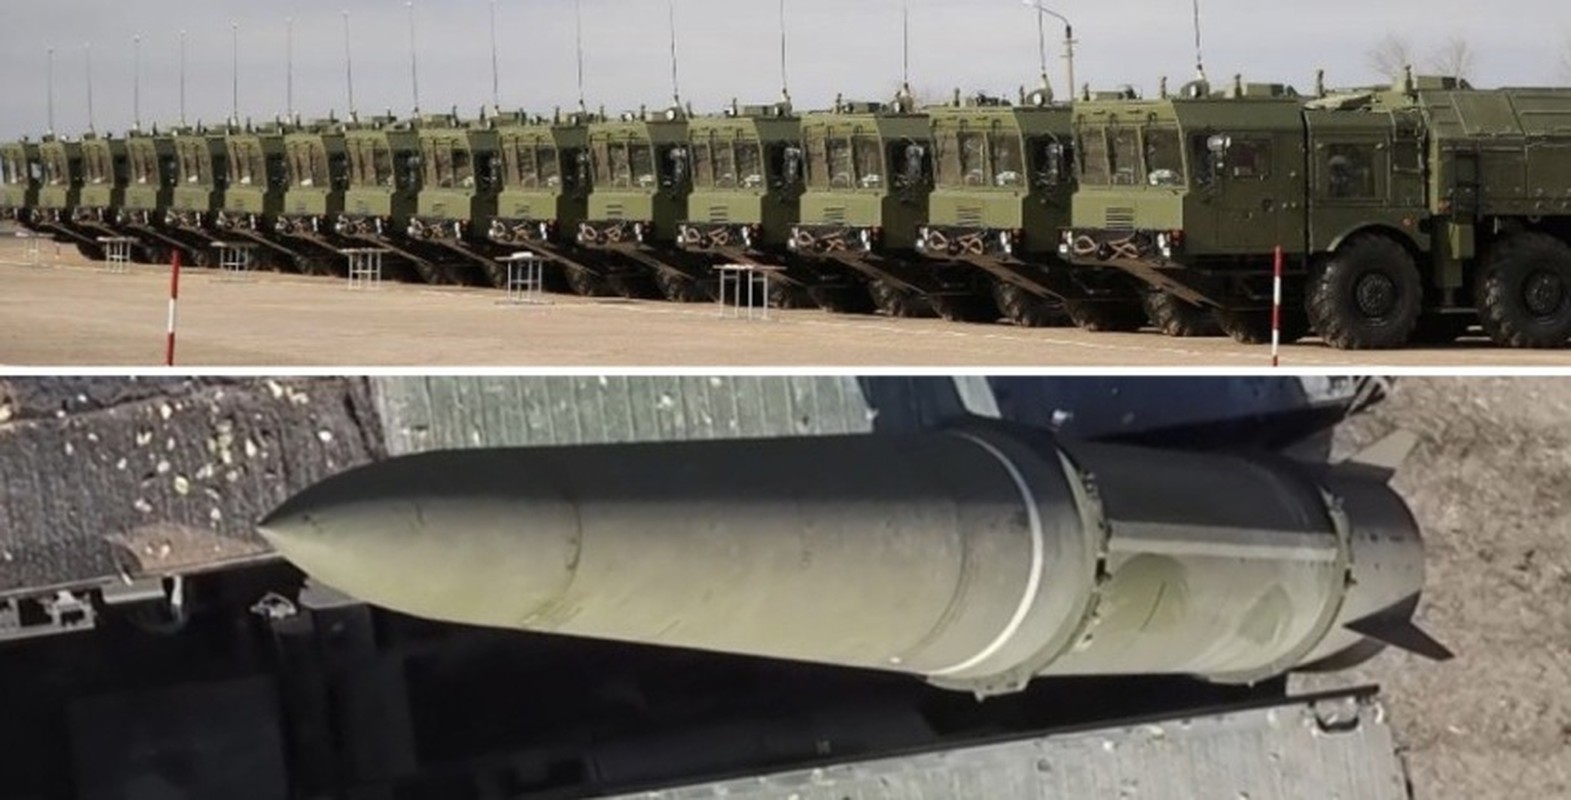 Quá hiệu quả trong thực chiến, Nga tăng sản xuất tên lửa Iskander